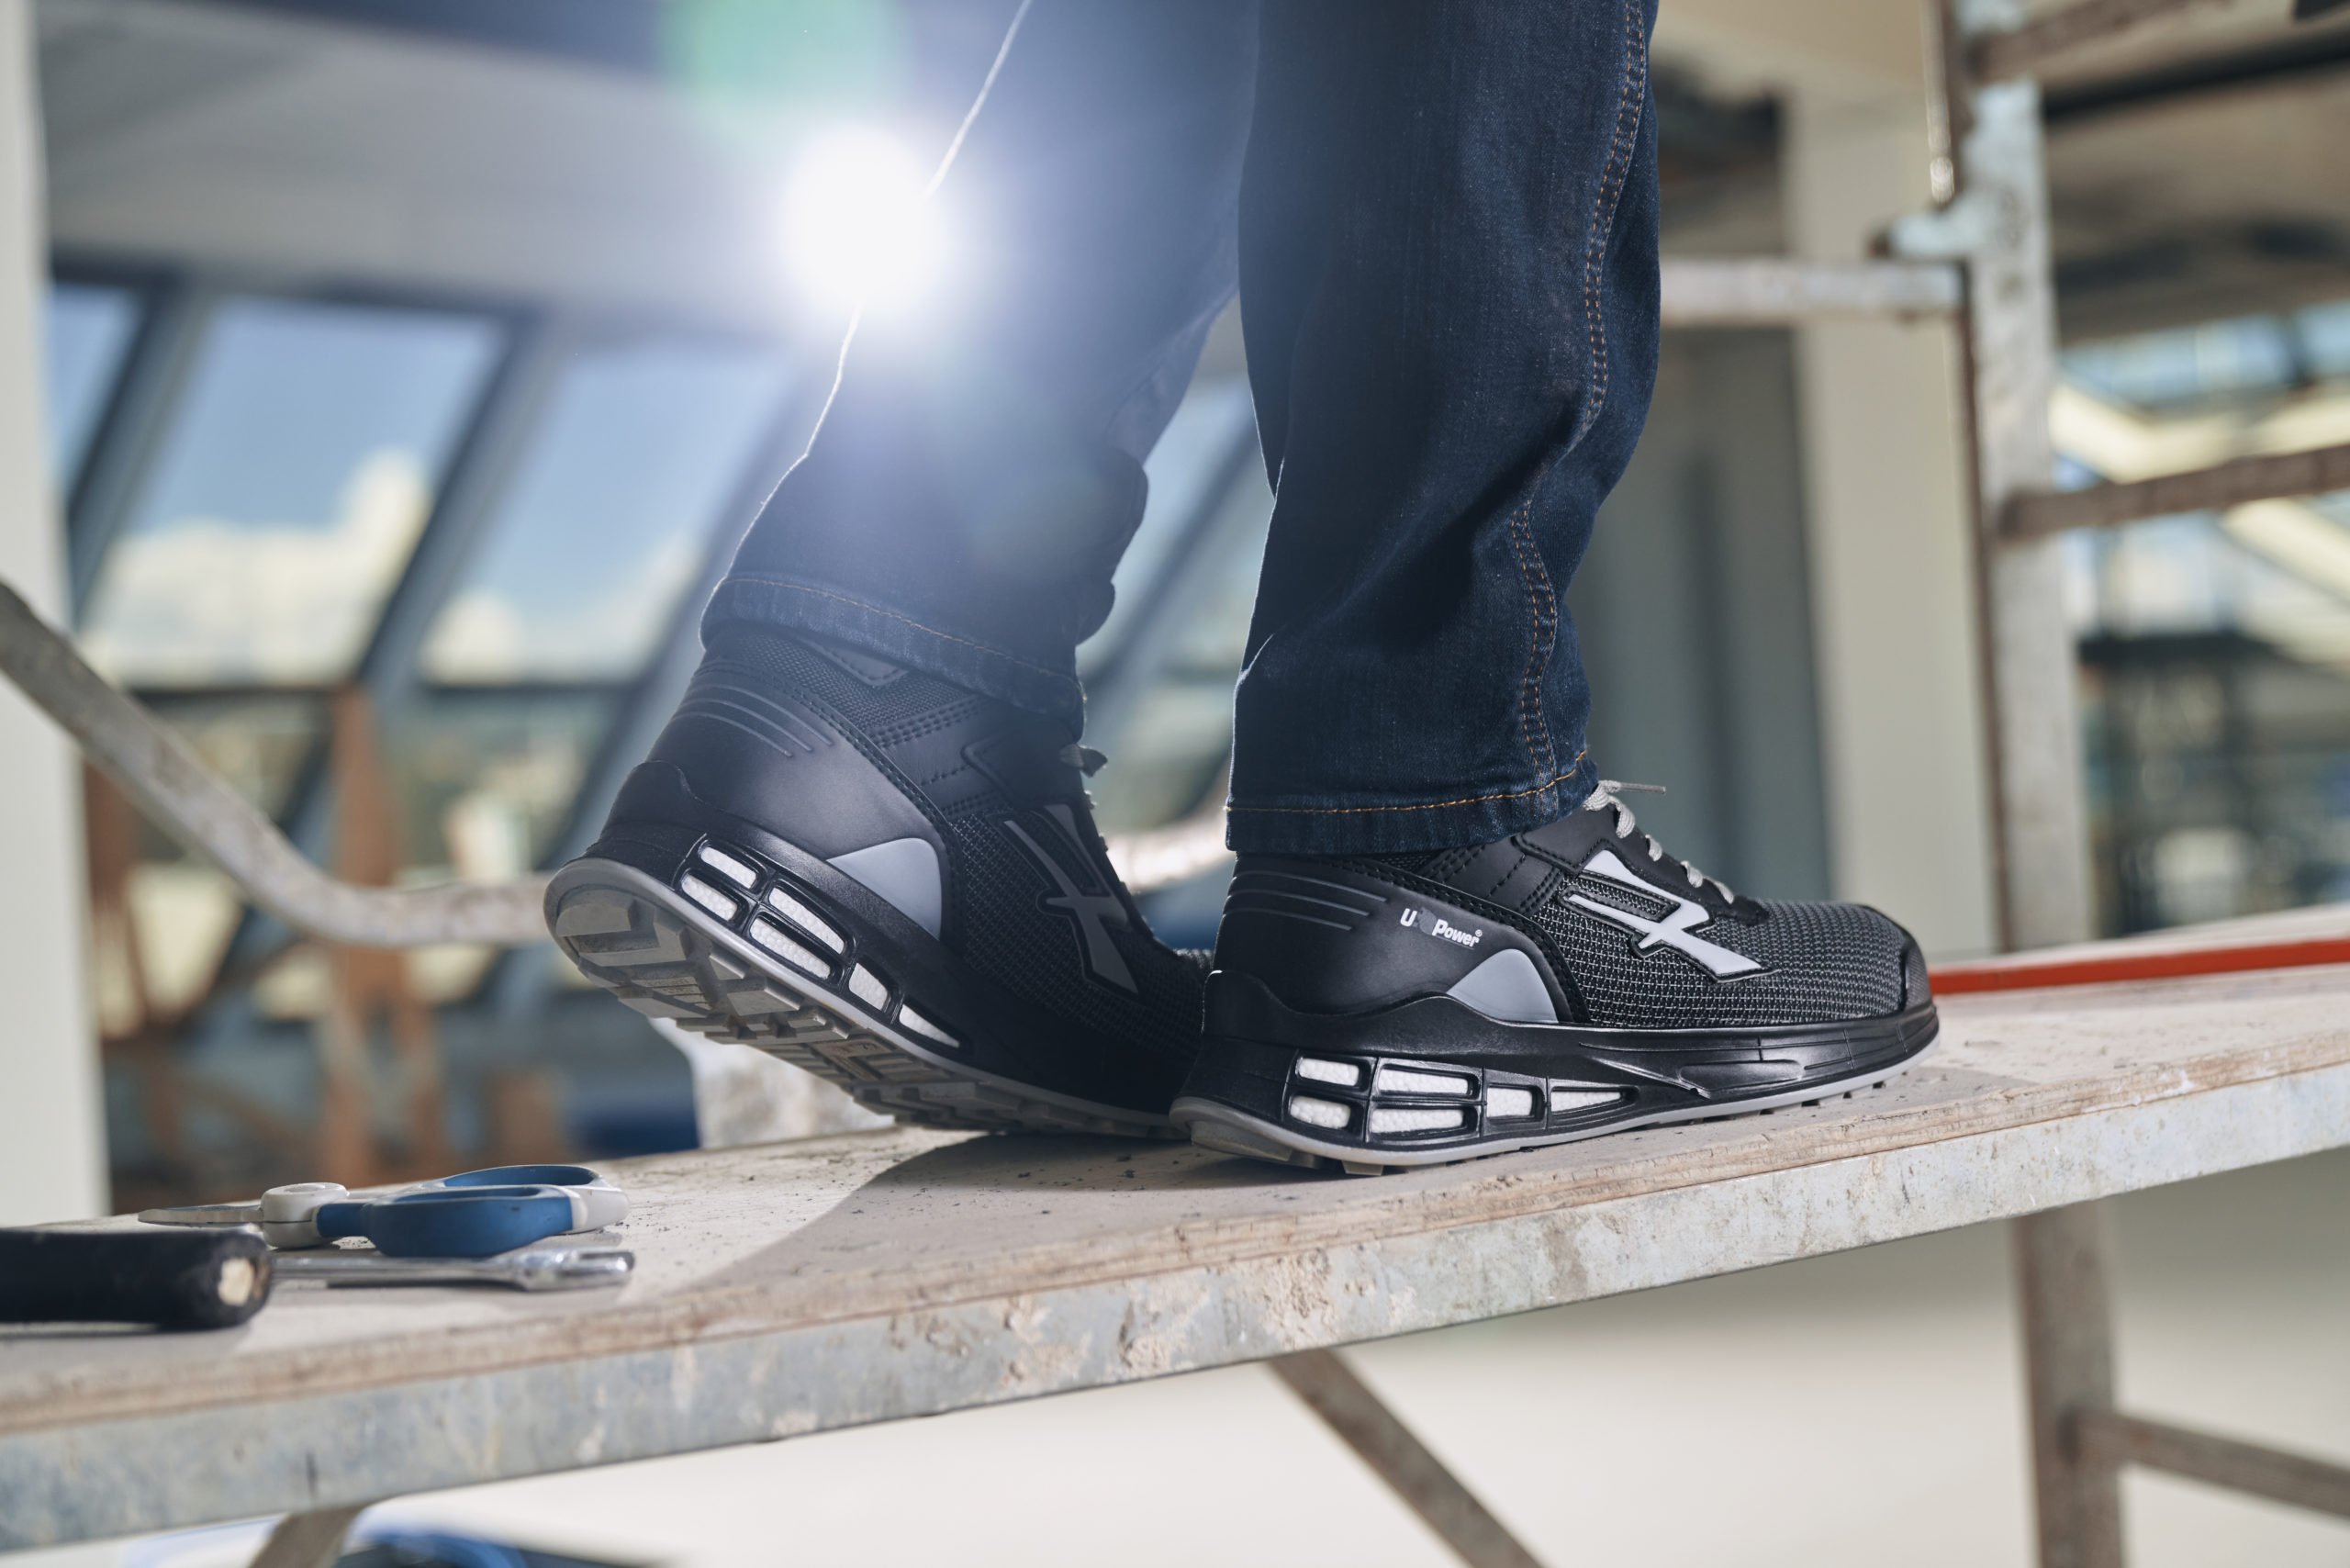 Come scegliere le migliori scarpe antinfortunistiche per migliorare la tua giornata lavorativa